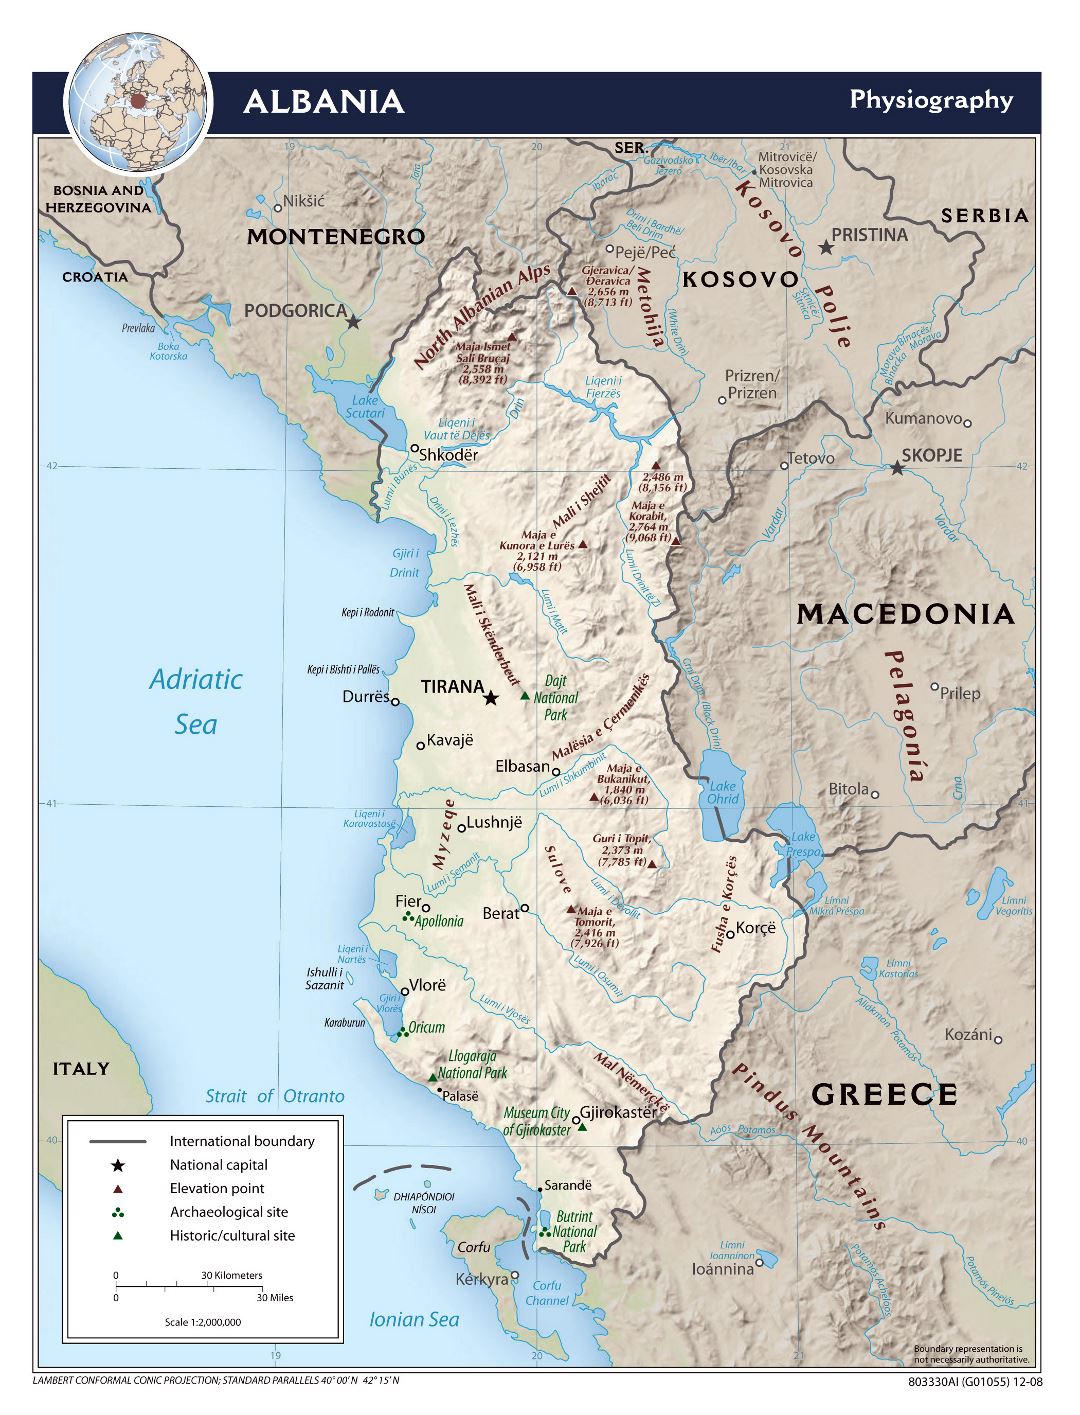 Mapa grande escala fisiografía de Albania - 2008